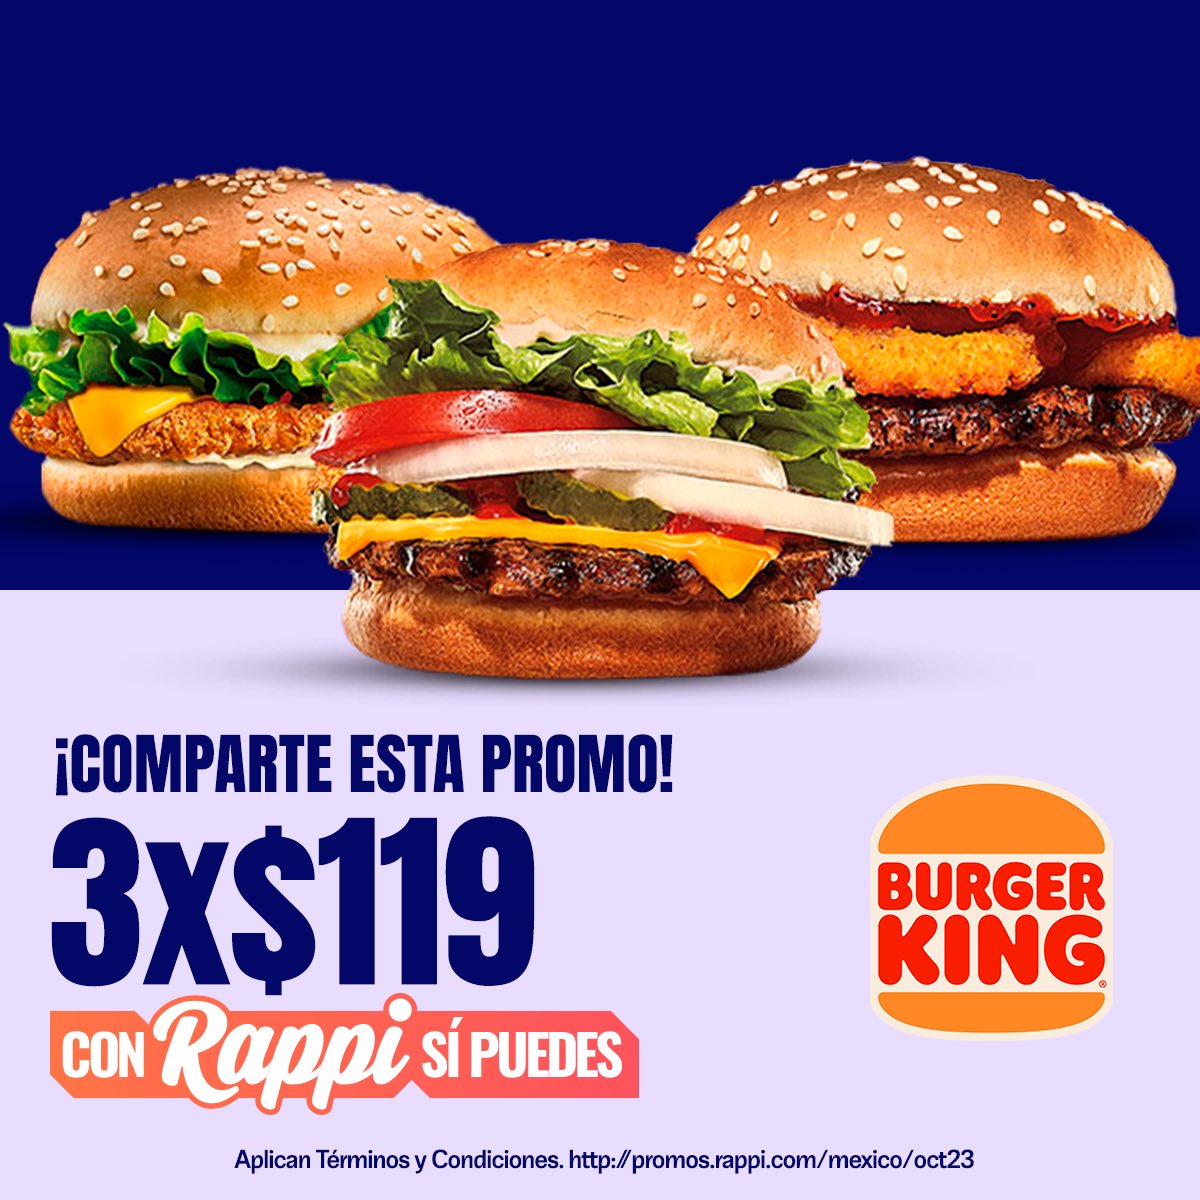 ¡La promo perfecta de Burger King para iniciar el fin de semana! 🍔🧡 Pídelas aquí: rappi.app.link/BURGER_KING_MX